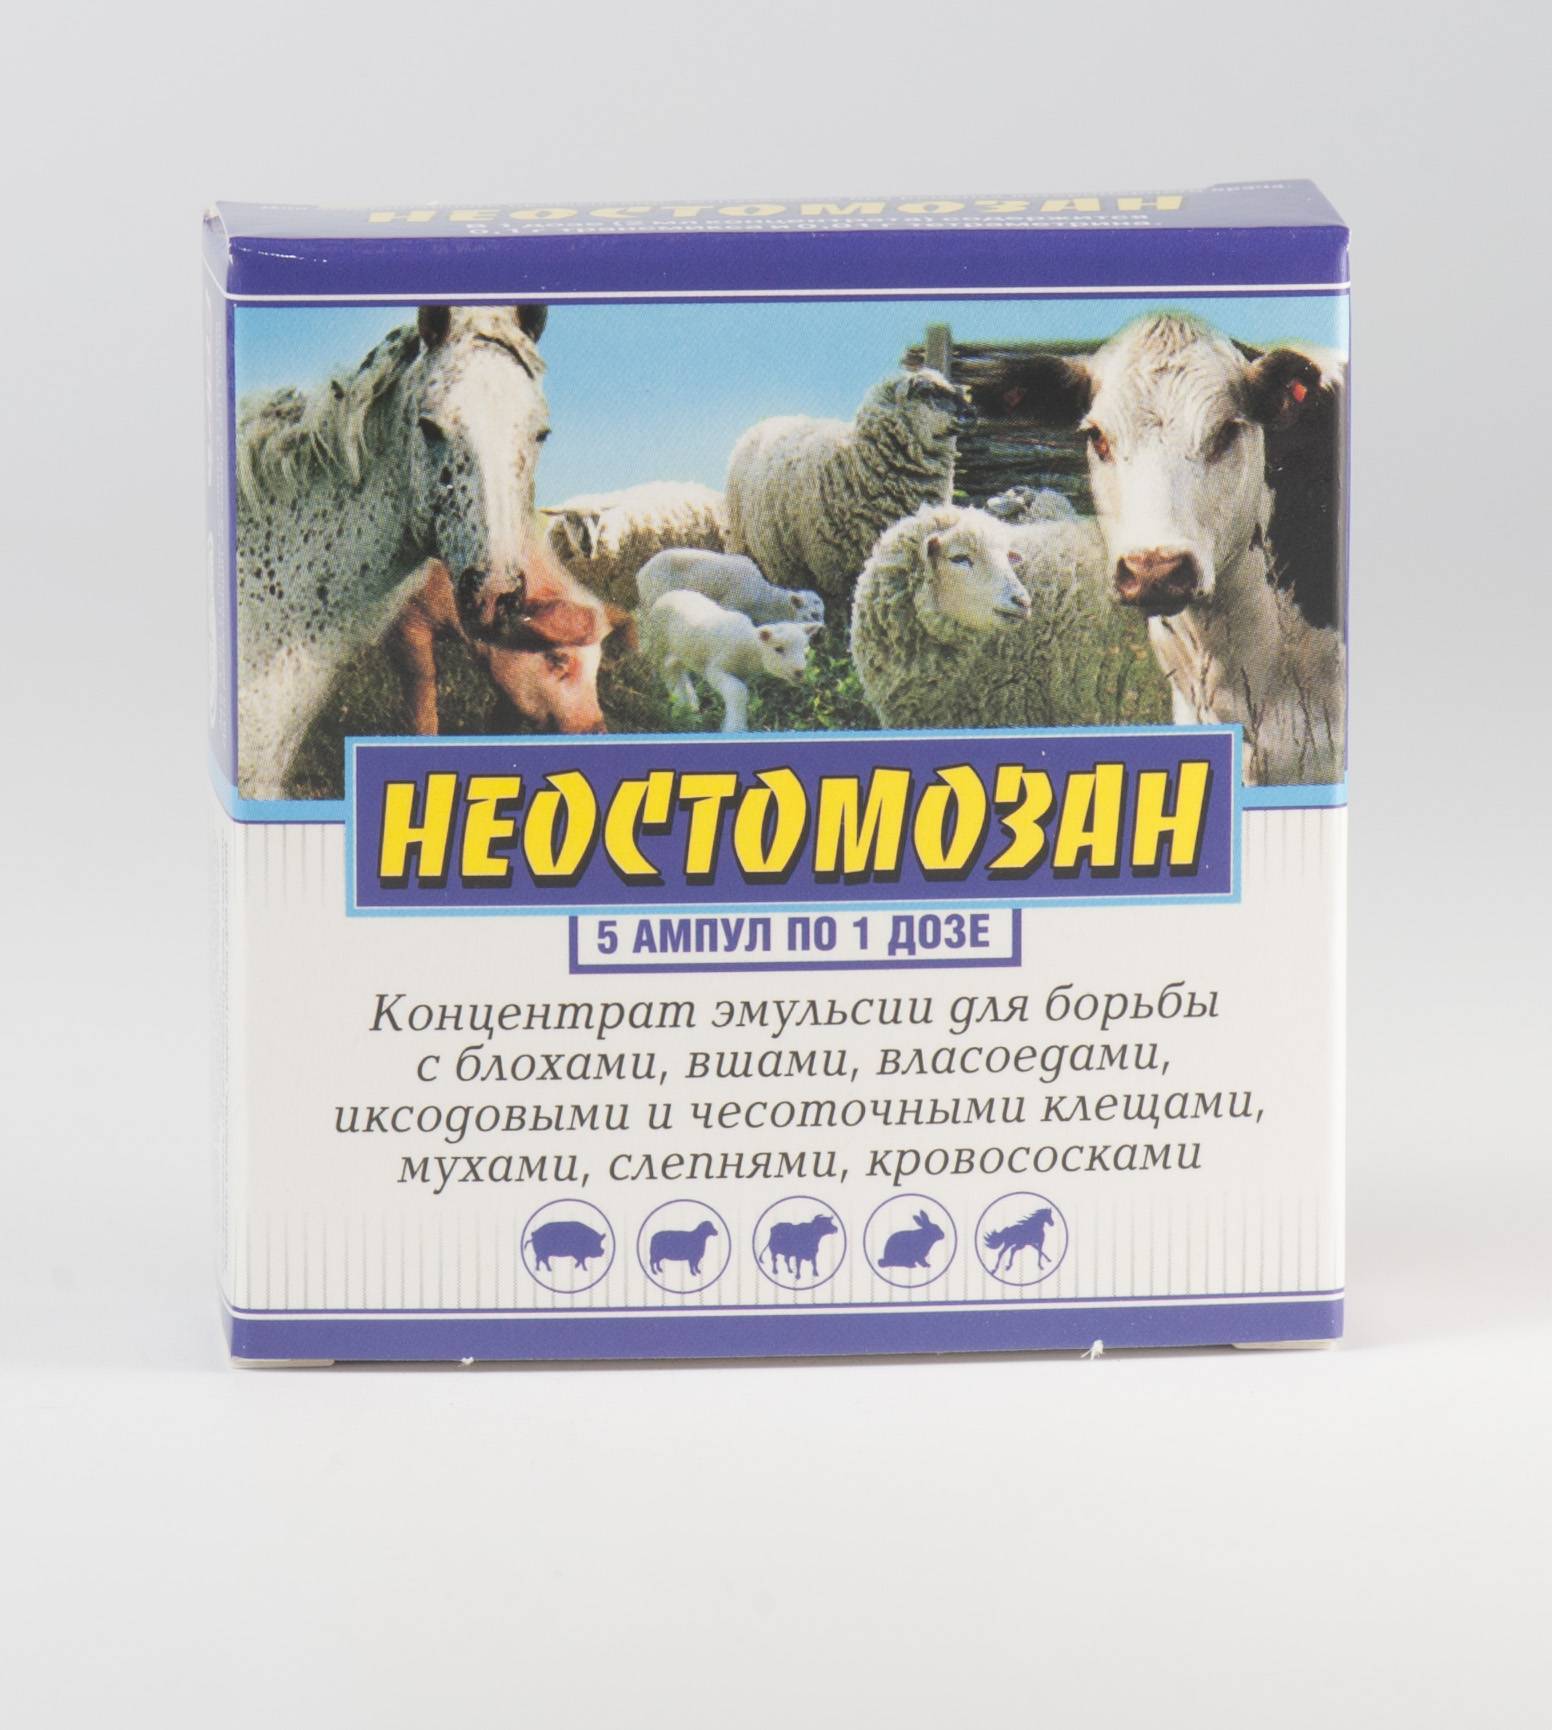 Вши у коров и телят: лечение, профилактика, народные средства, ветеринарная служба владимирской области